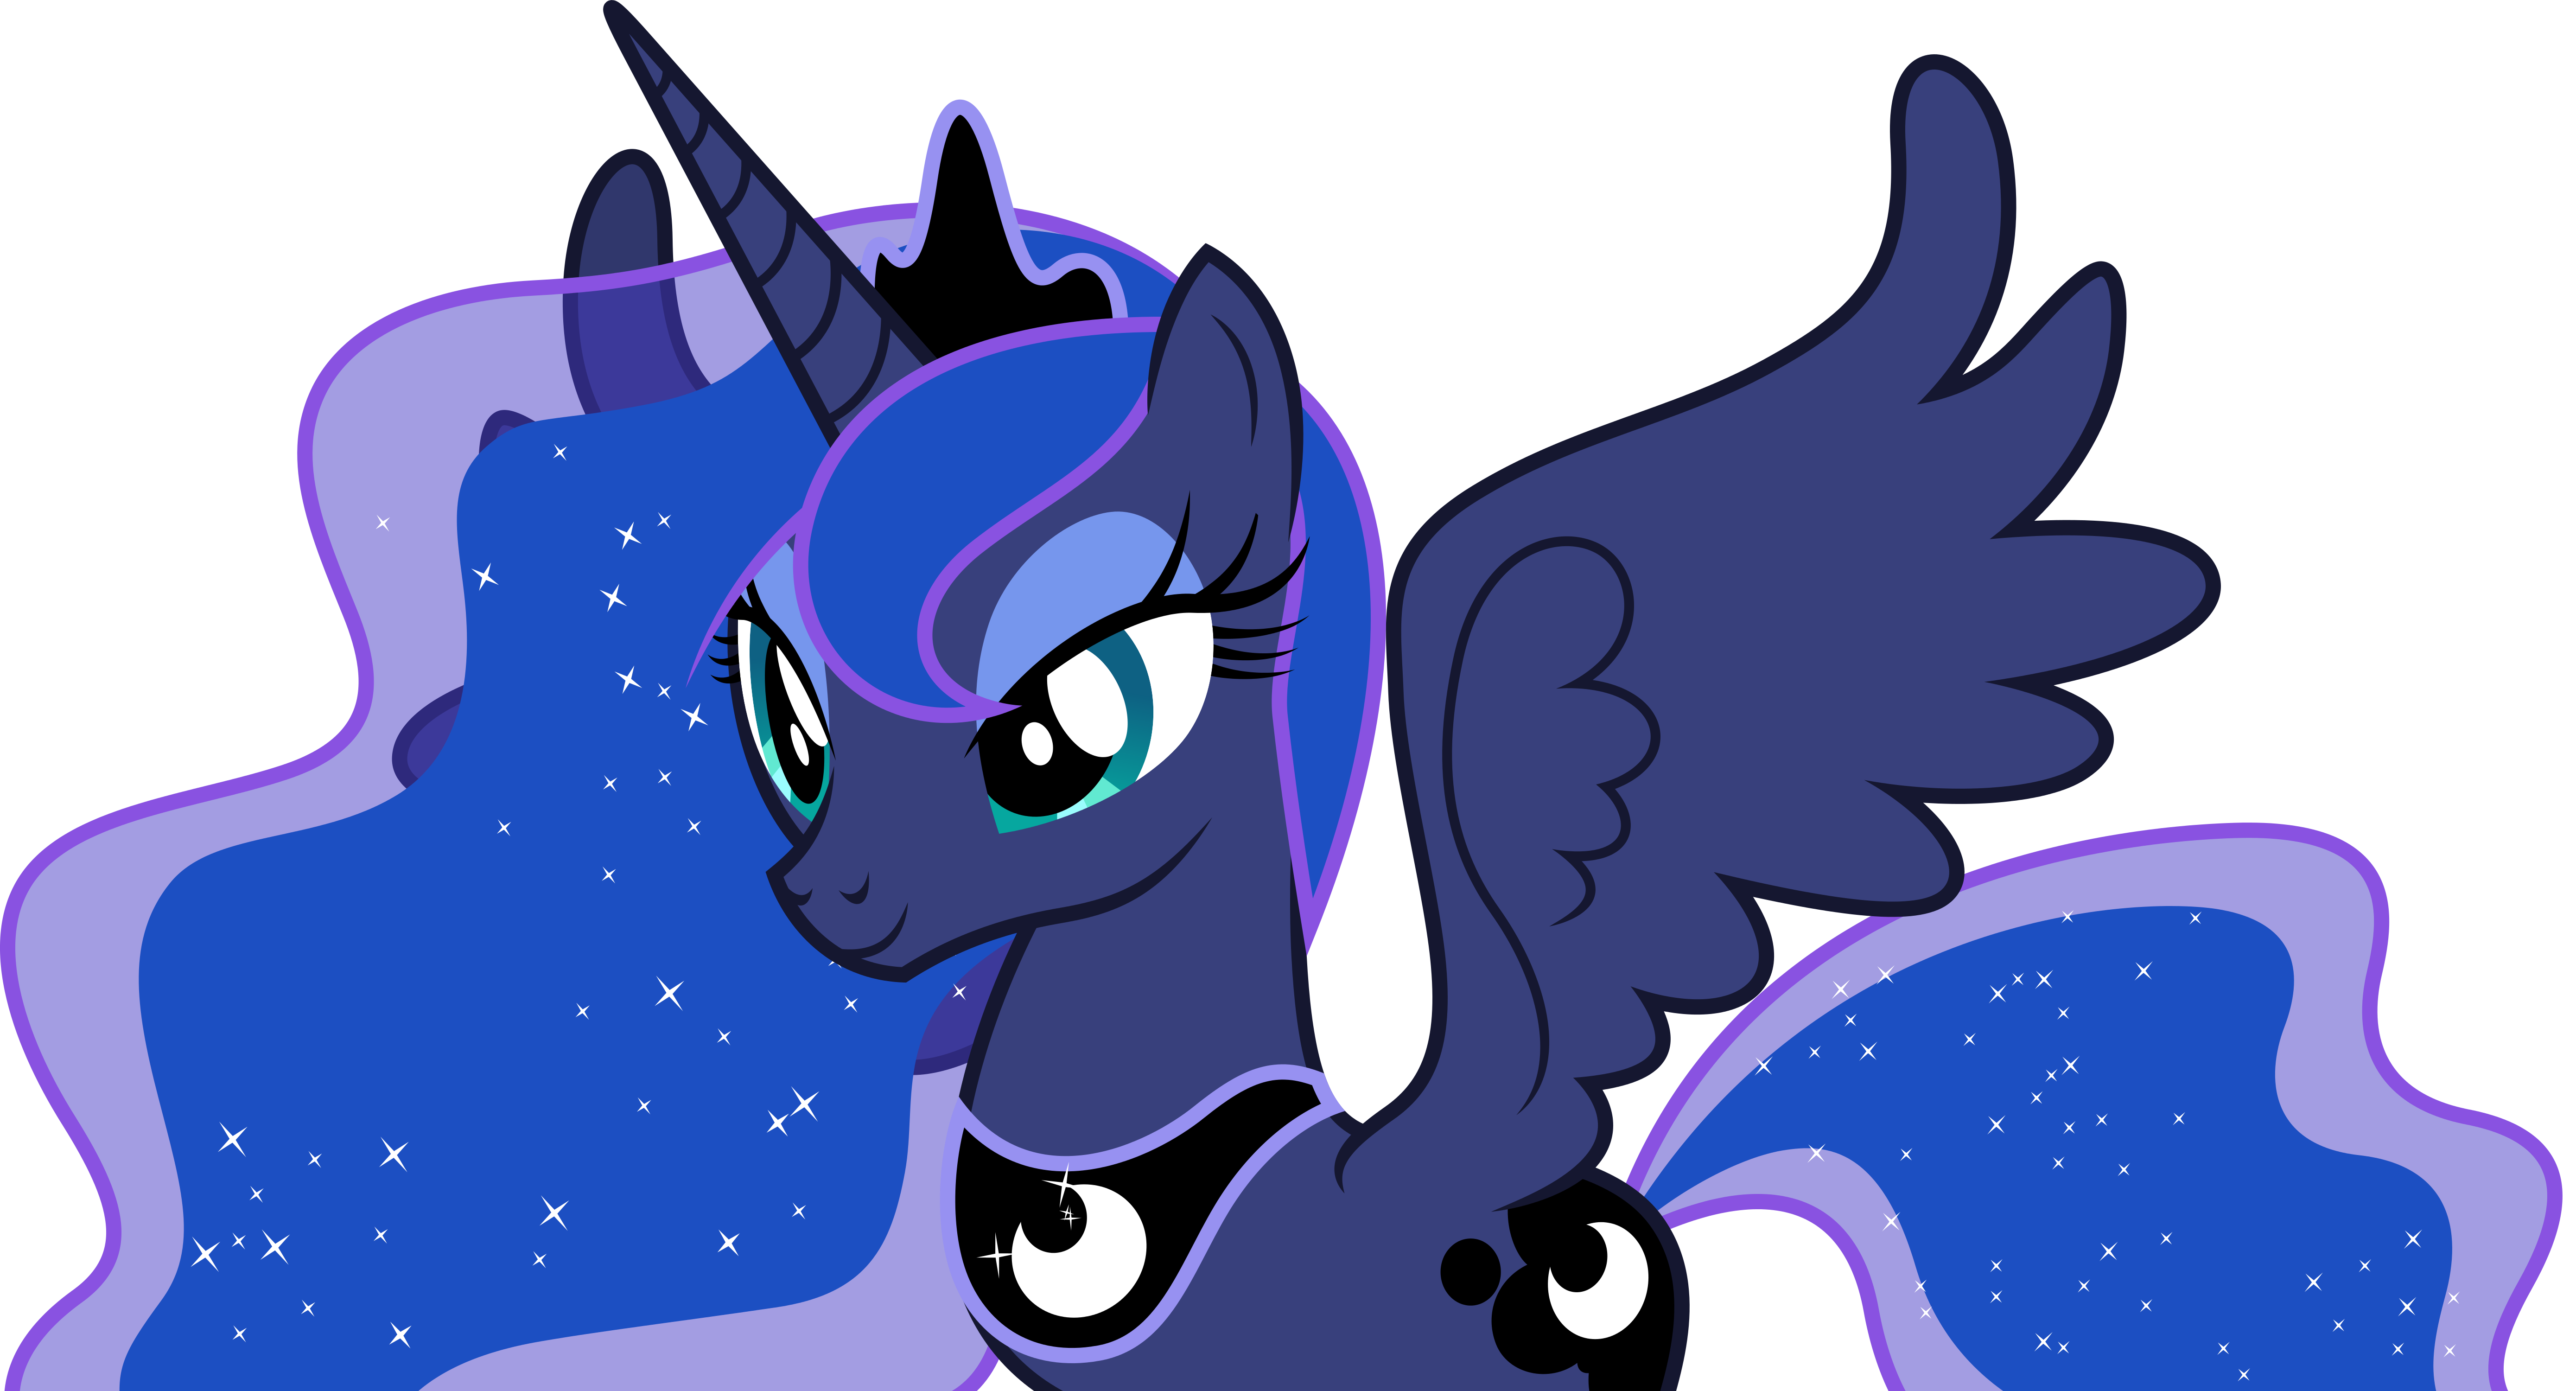 Download Vector #652 - Princess Luna #17 by DashieSparkle on DeviantArt